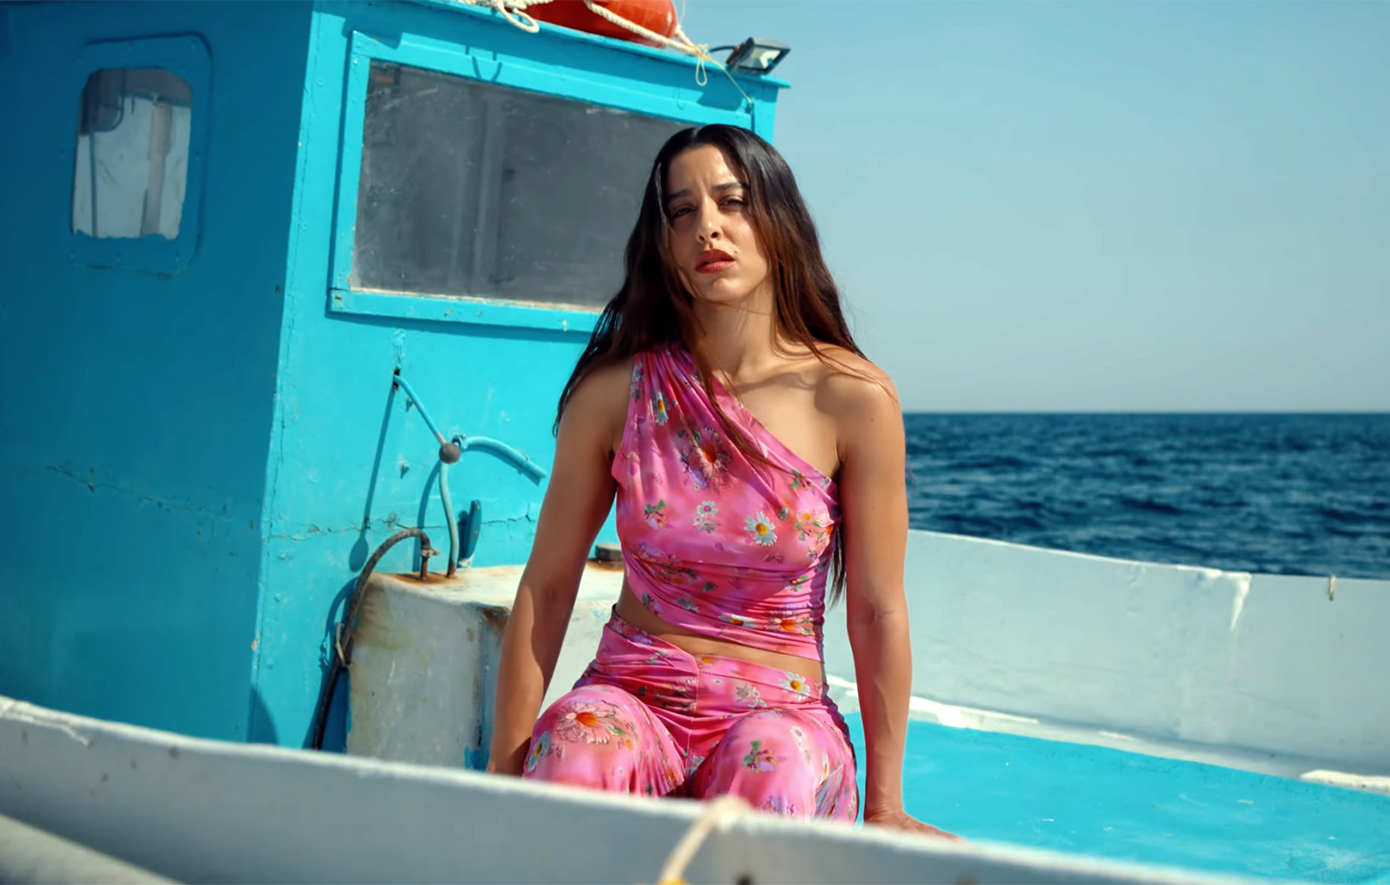 Αφιερωμένο στους νεκρούς πρόσφυγες στη Μεσόγειο το νέο τραγούδι της Μαρίνας Σάττι «Αχ, θάλασσα»